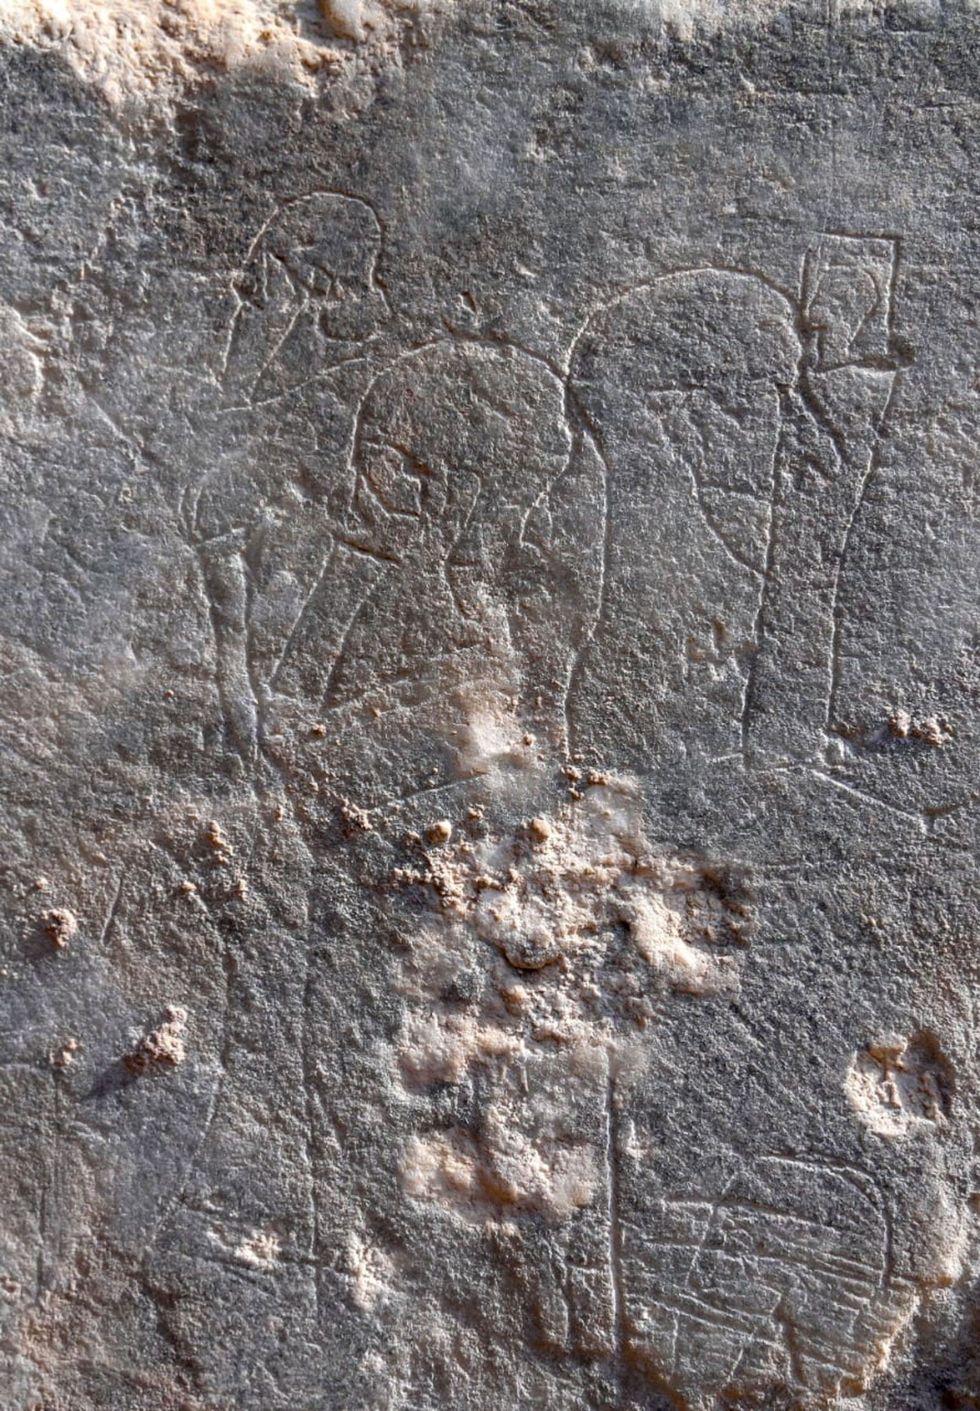 Deze schets mogelijk van Assyrische koning in profiel troffen de archeologen aan op een leeg stukje paneel dat boven de grond uitstak Waarschijnlijk werd deze gemaakt door een wachter of passant die zich verveelde